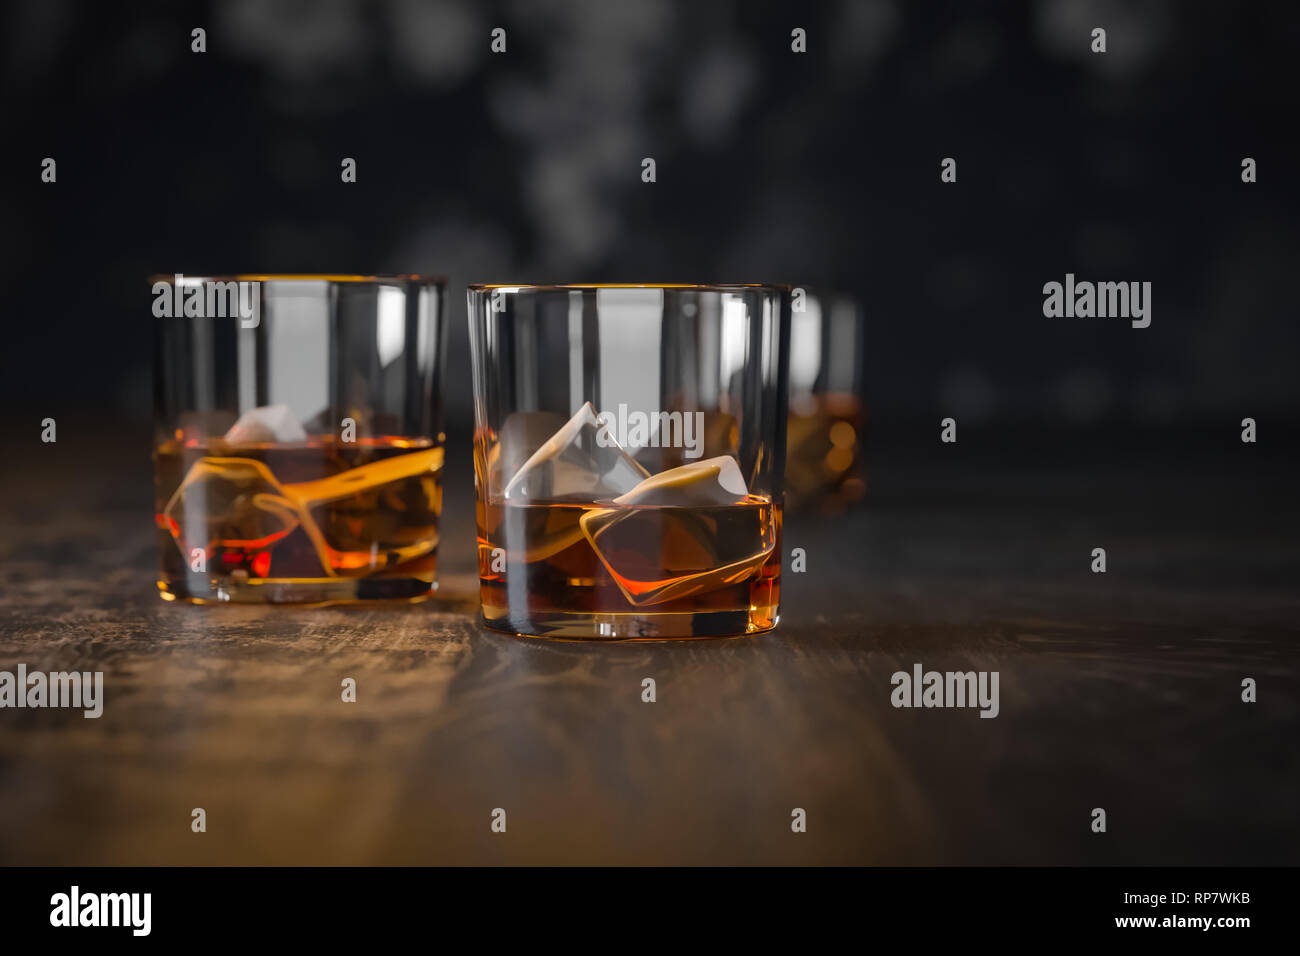 Trois verres de whisky avec de la glace, de se tenir sur une vieille table en bois sombre et un fond noir Banque D'Images